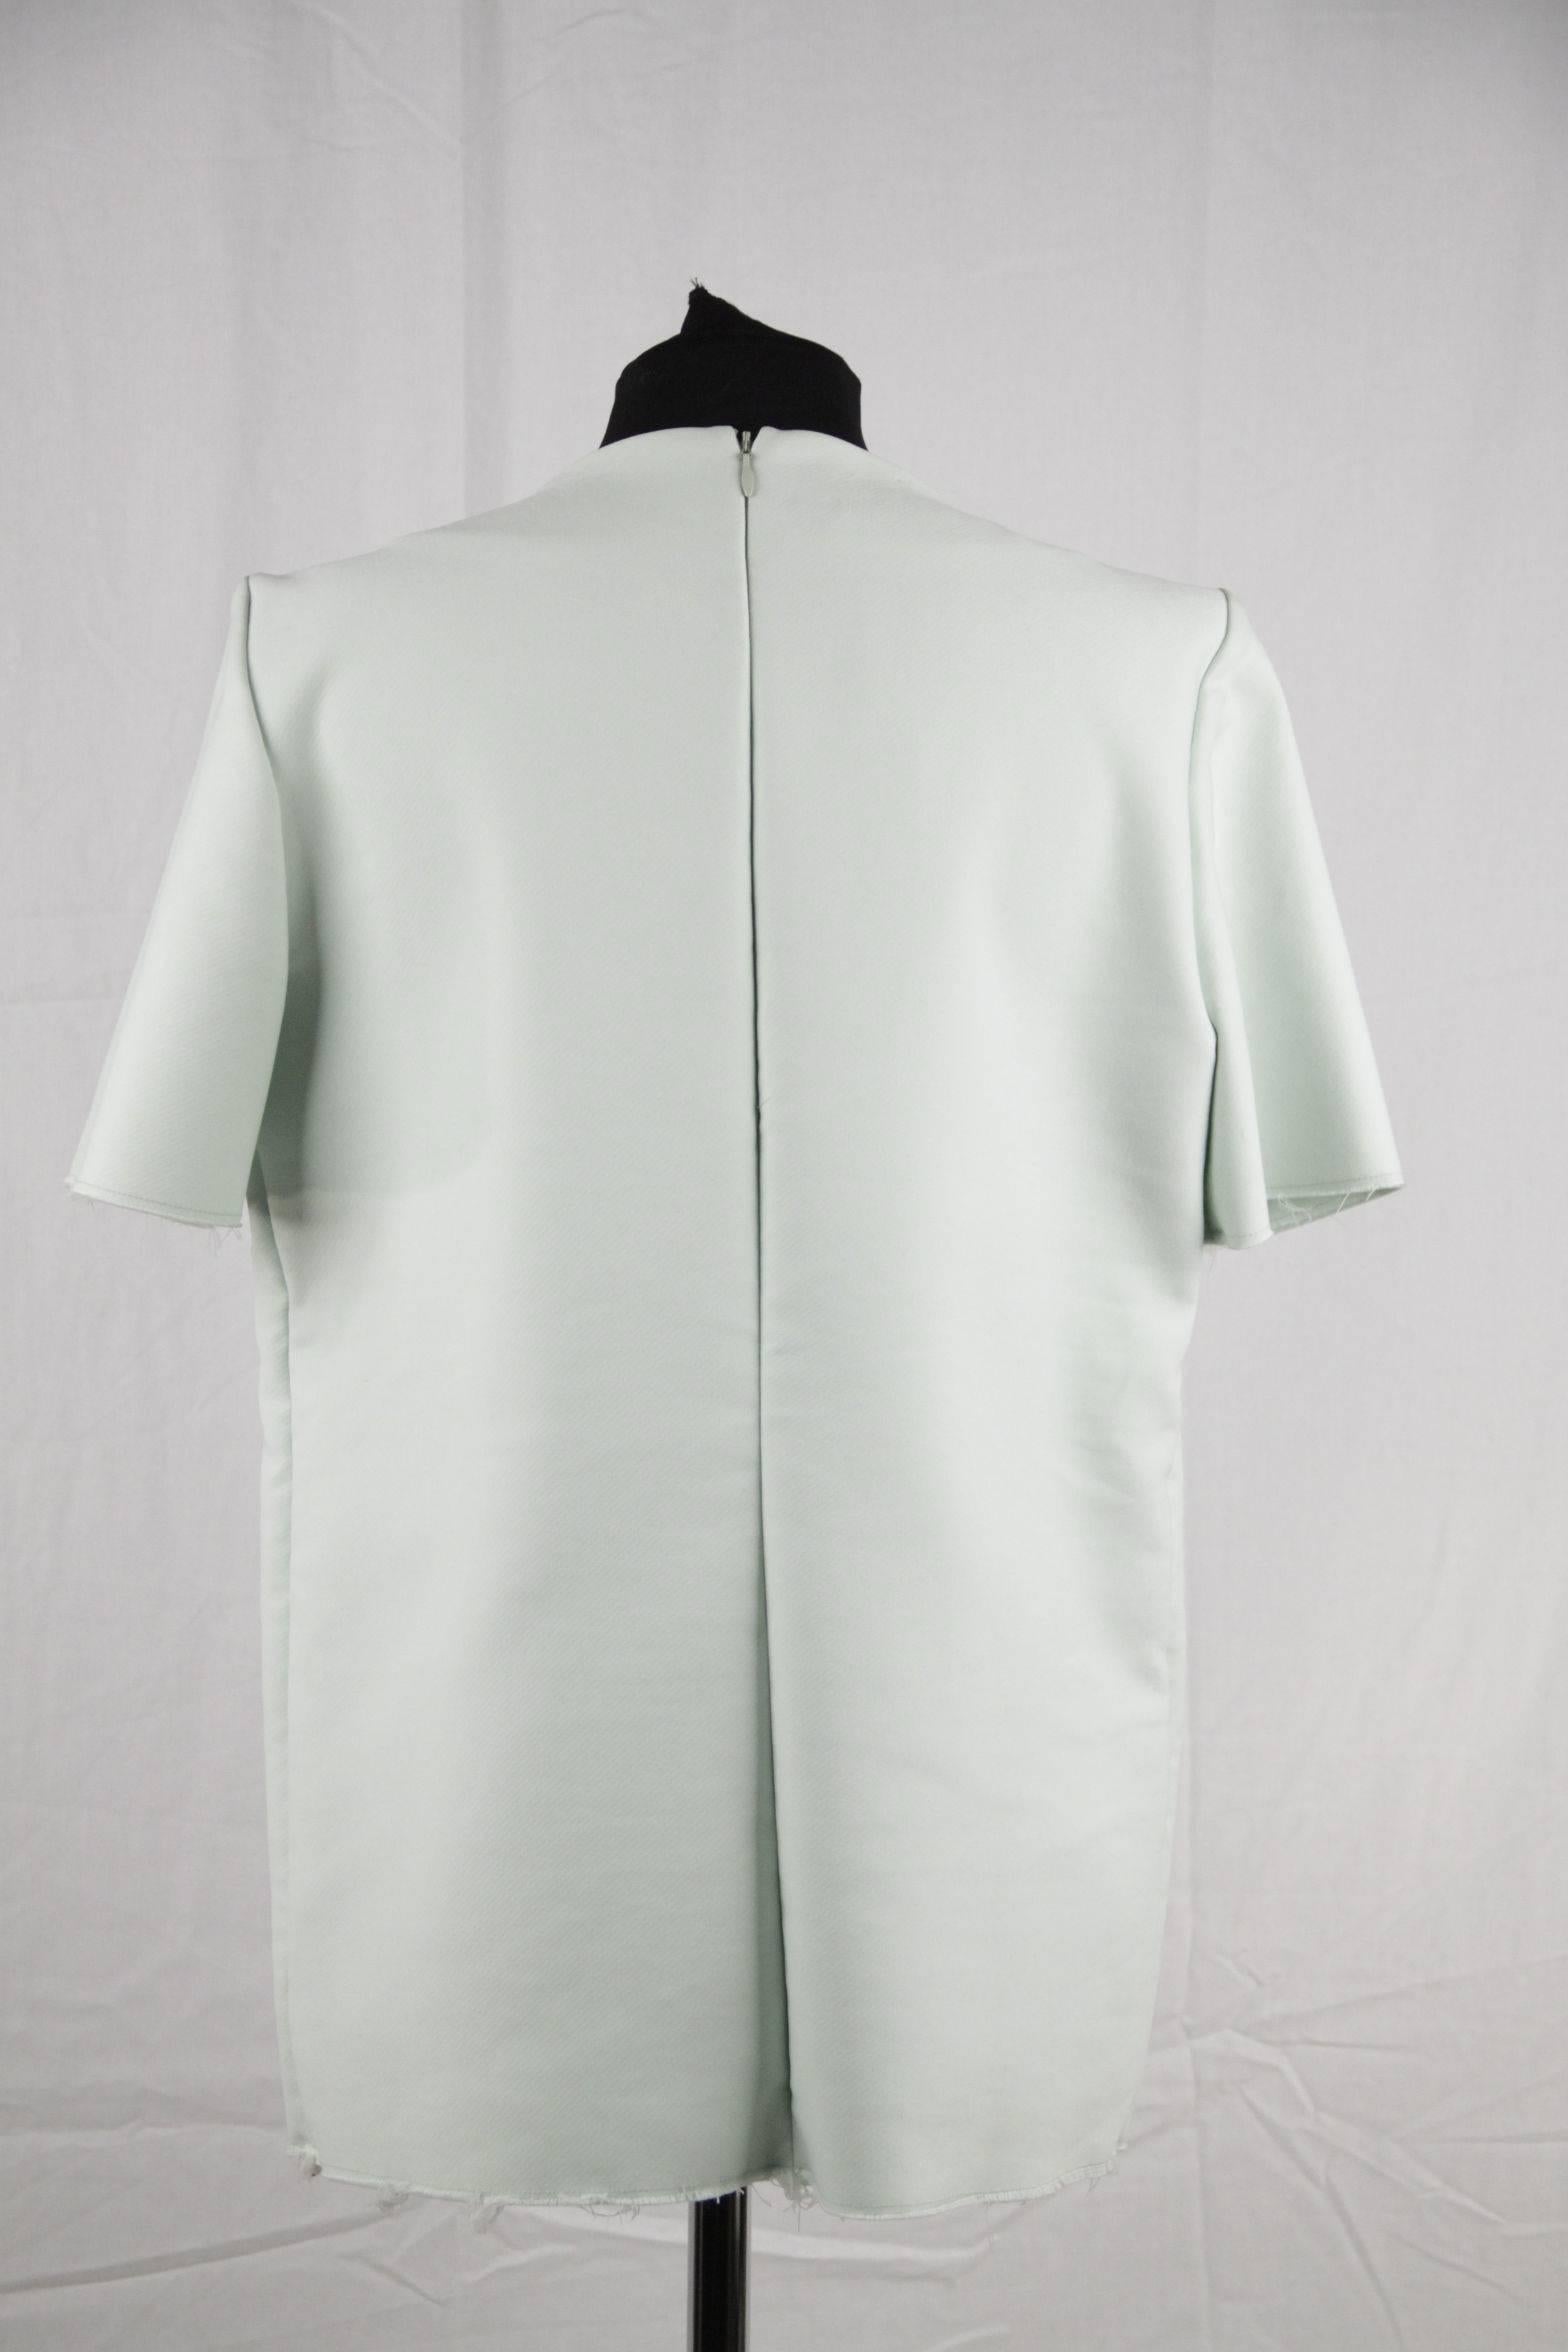 Gray Marni Light Green Cotton Blend T Shirt Top Face Print Size 42